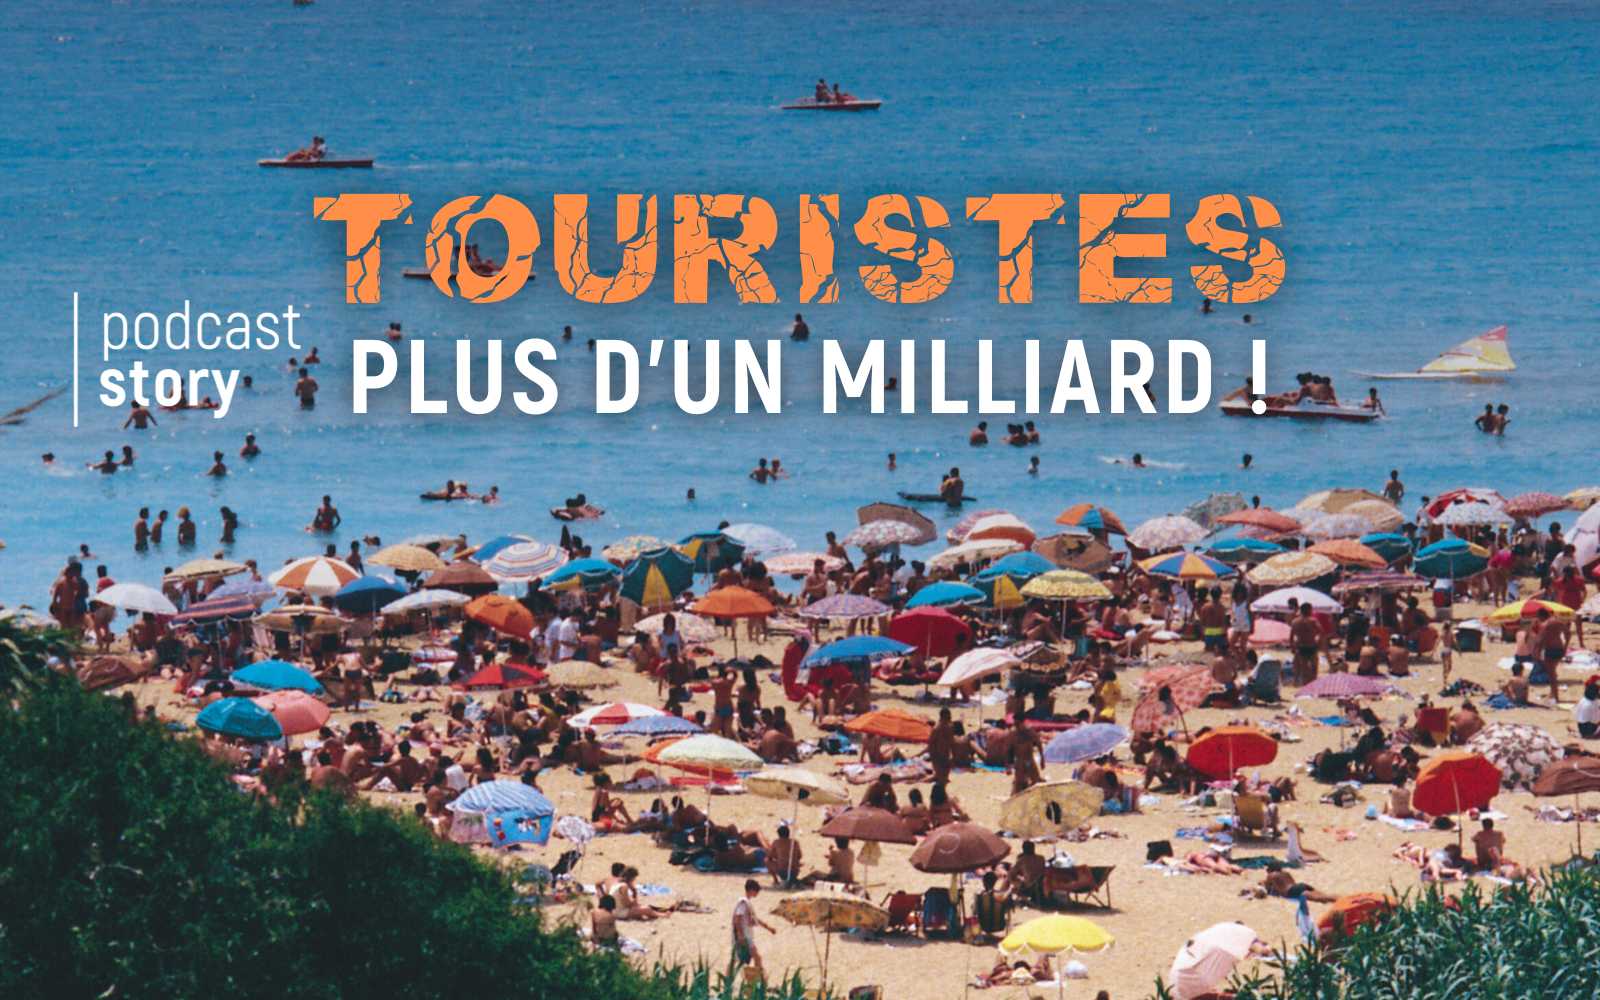 TOURISTES : PLUS D’UN MILLIARD !